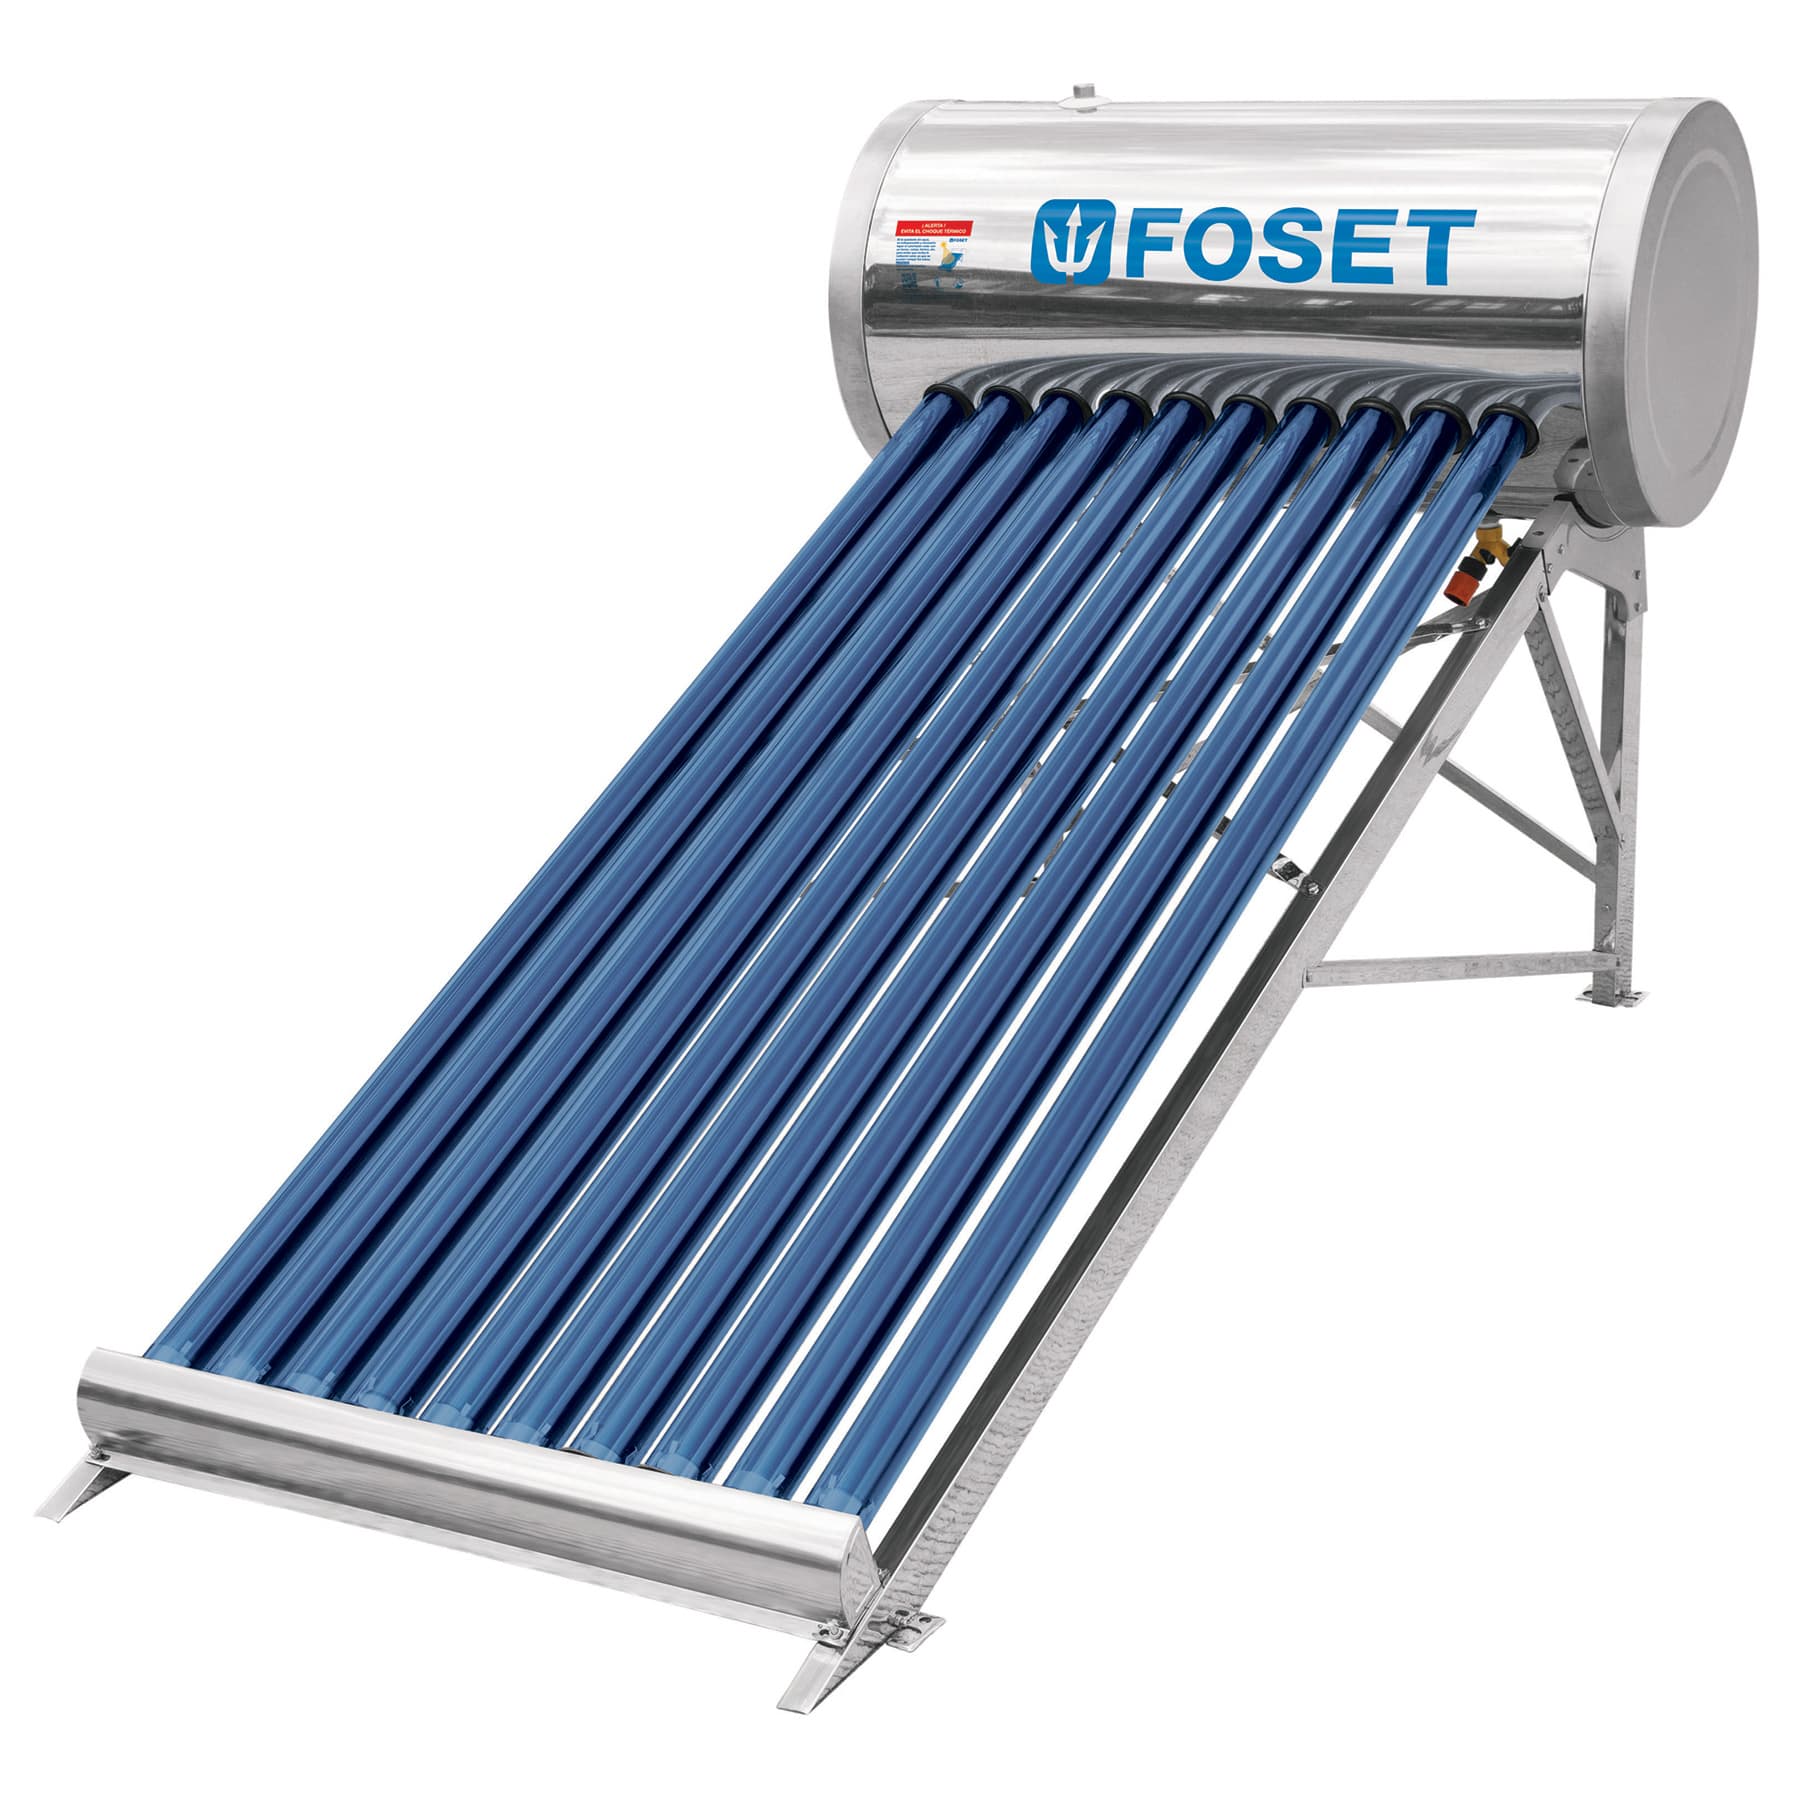 Desfavorable Tortuga lluvia Calentador solar de agua 10 tubos 3 personas FOSET 130 litros Mod. CALE-10S  - Vaqueiros Ferreteros